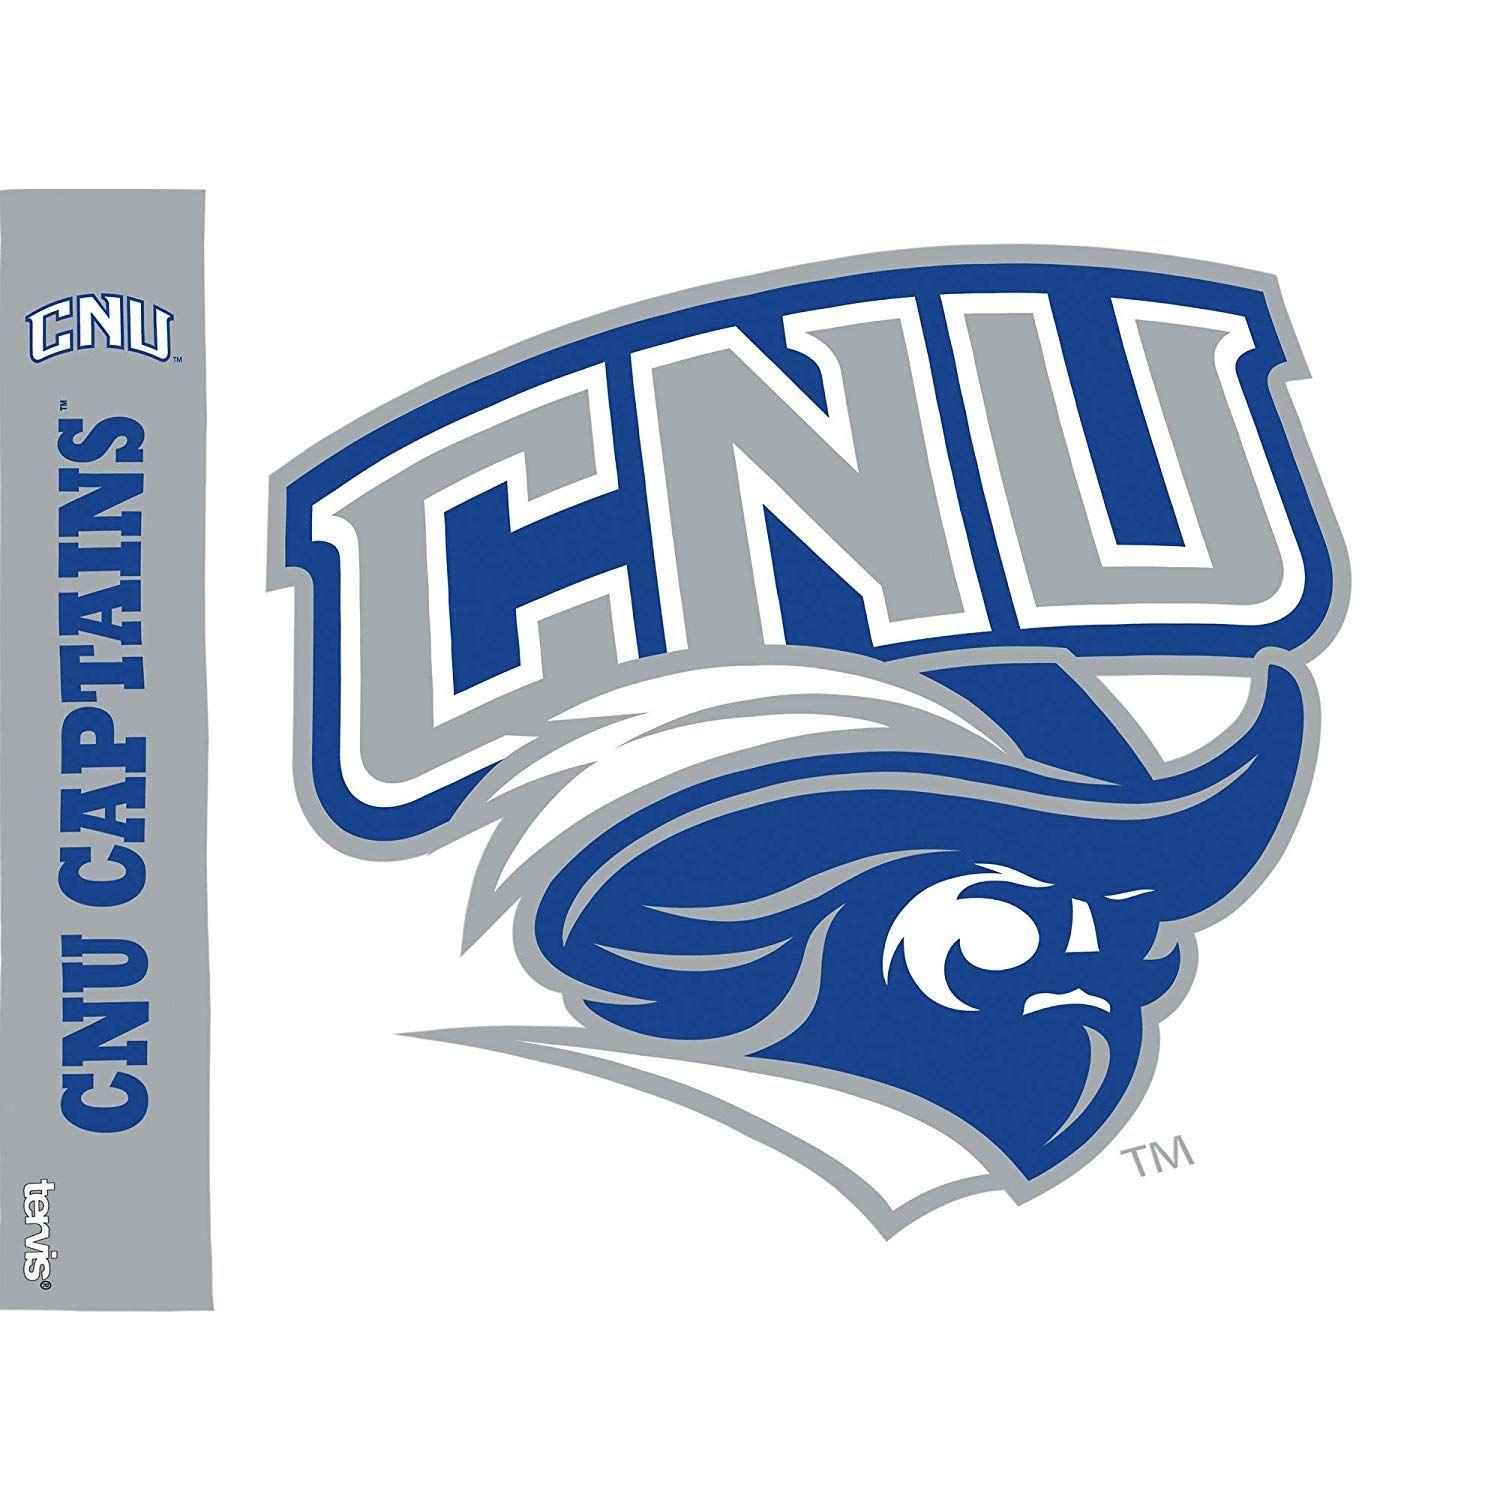 CNU Logo - Cnu Logo